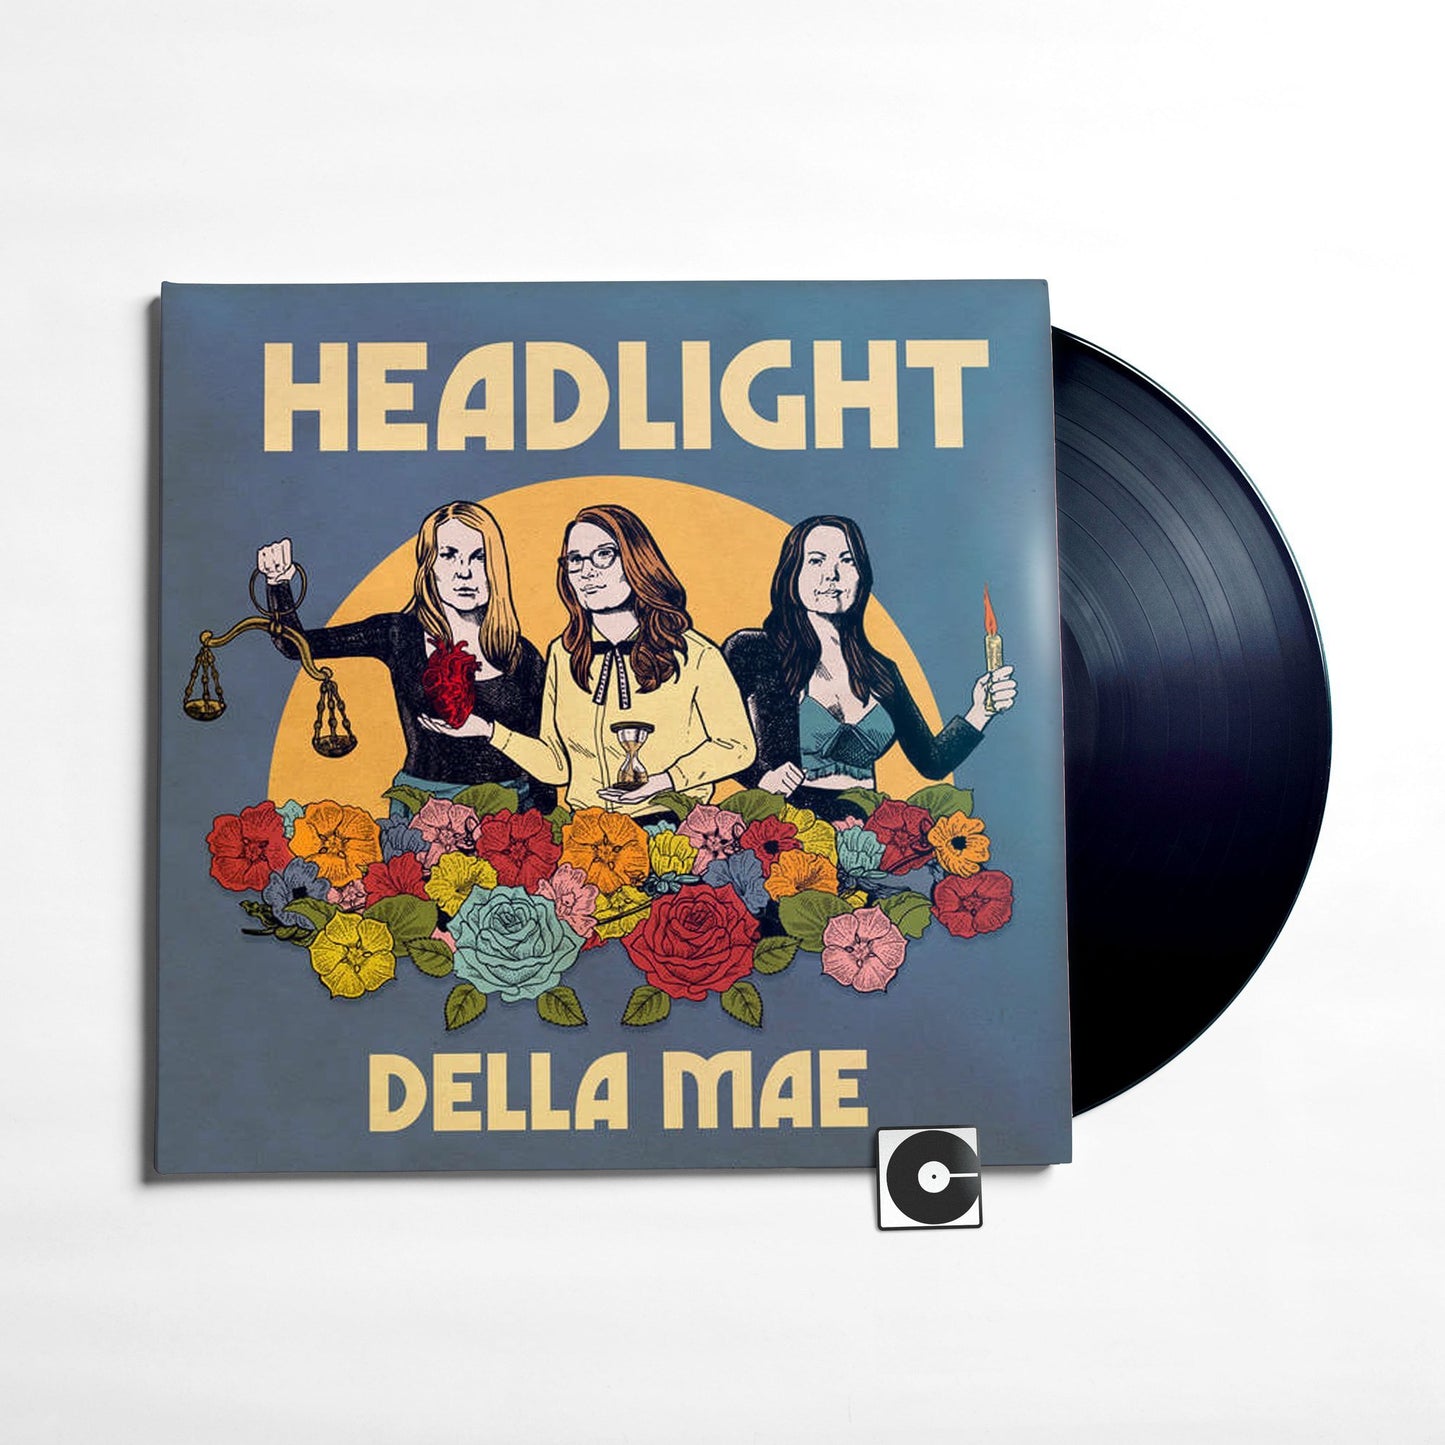 Della Mae - "Headlight"